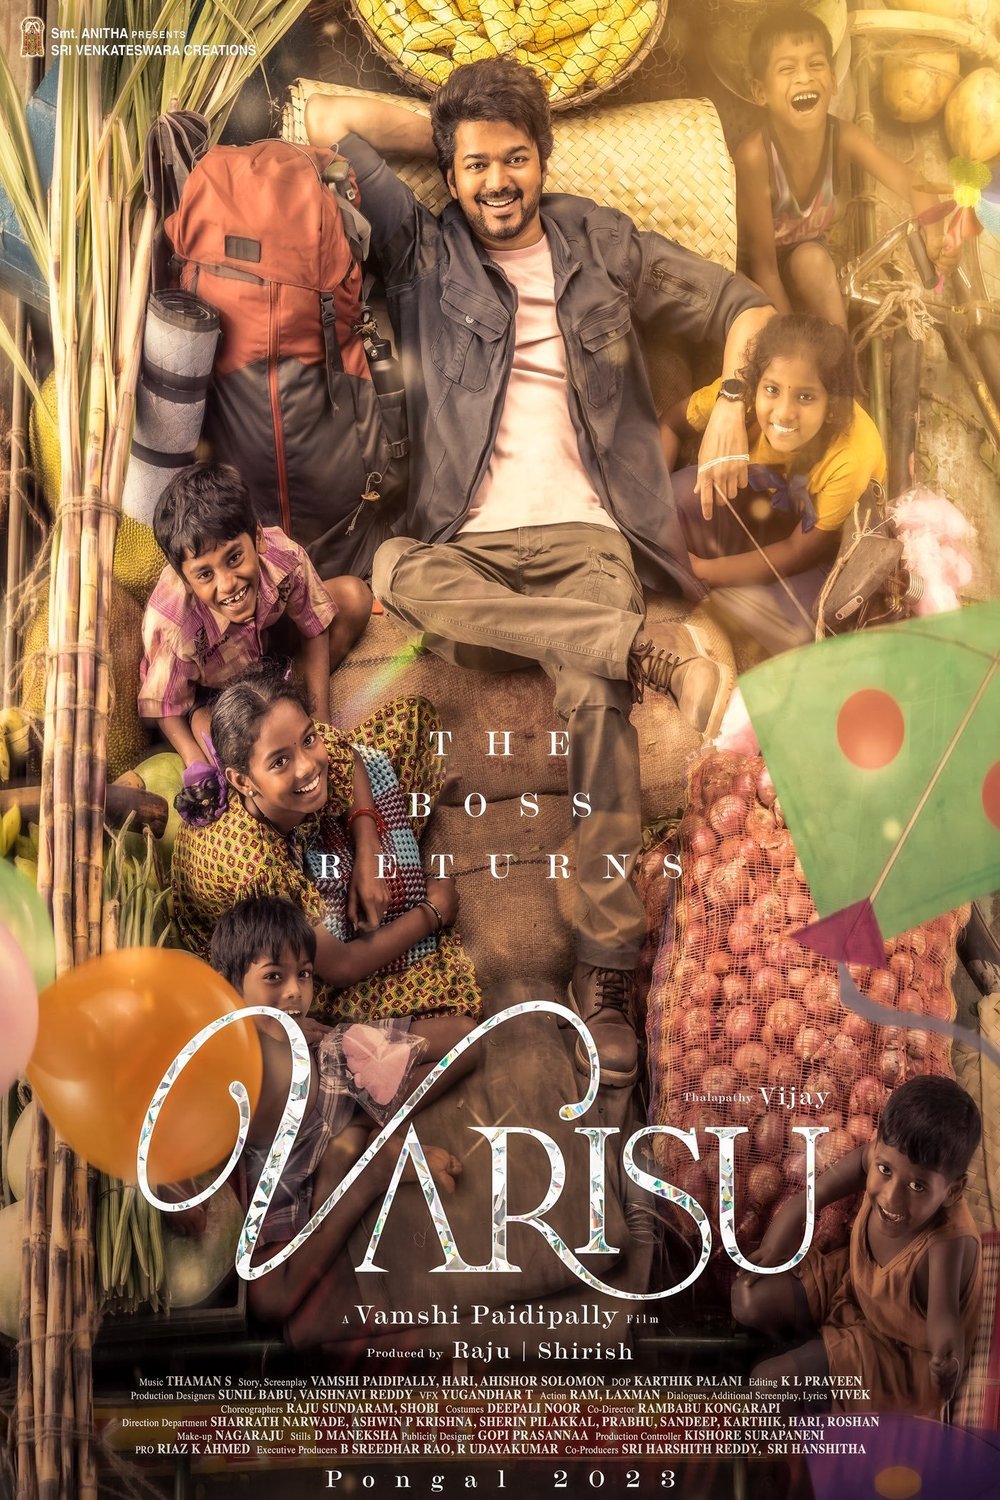 Tamil poster of the movie Varisu